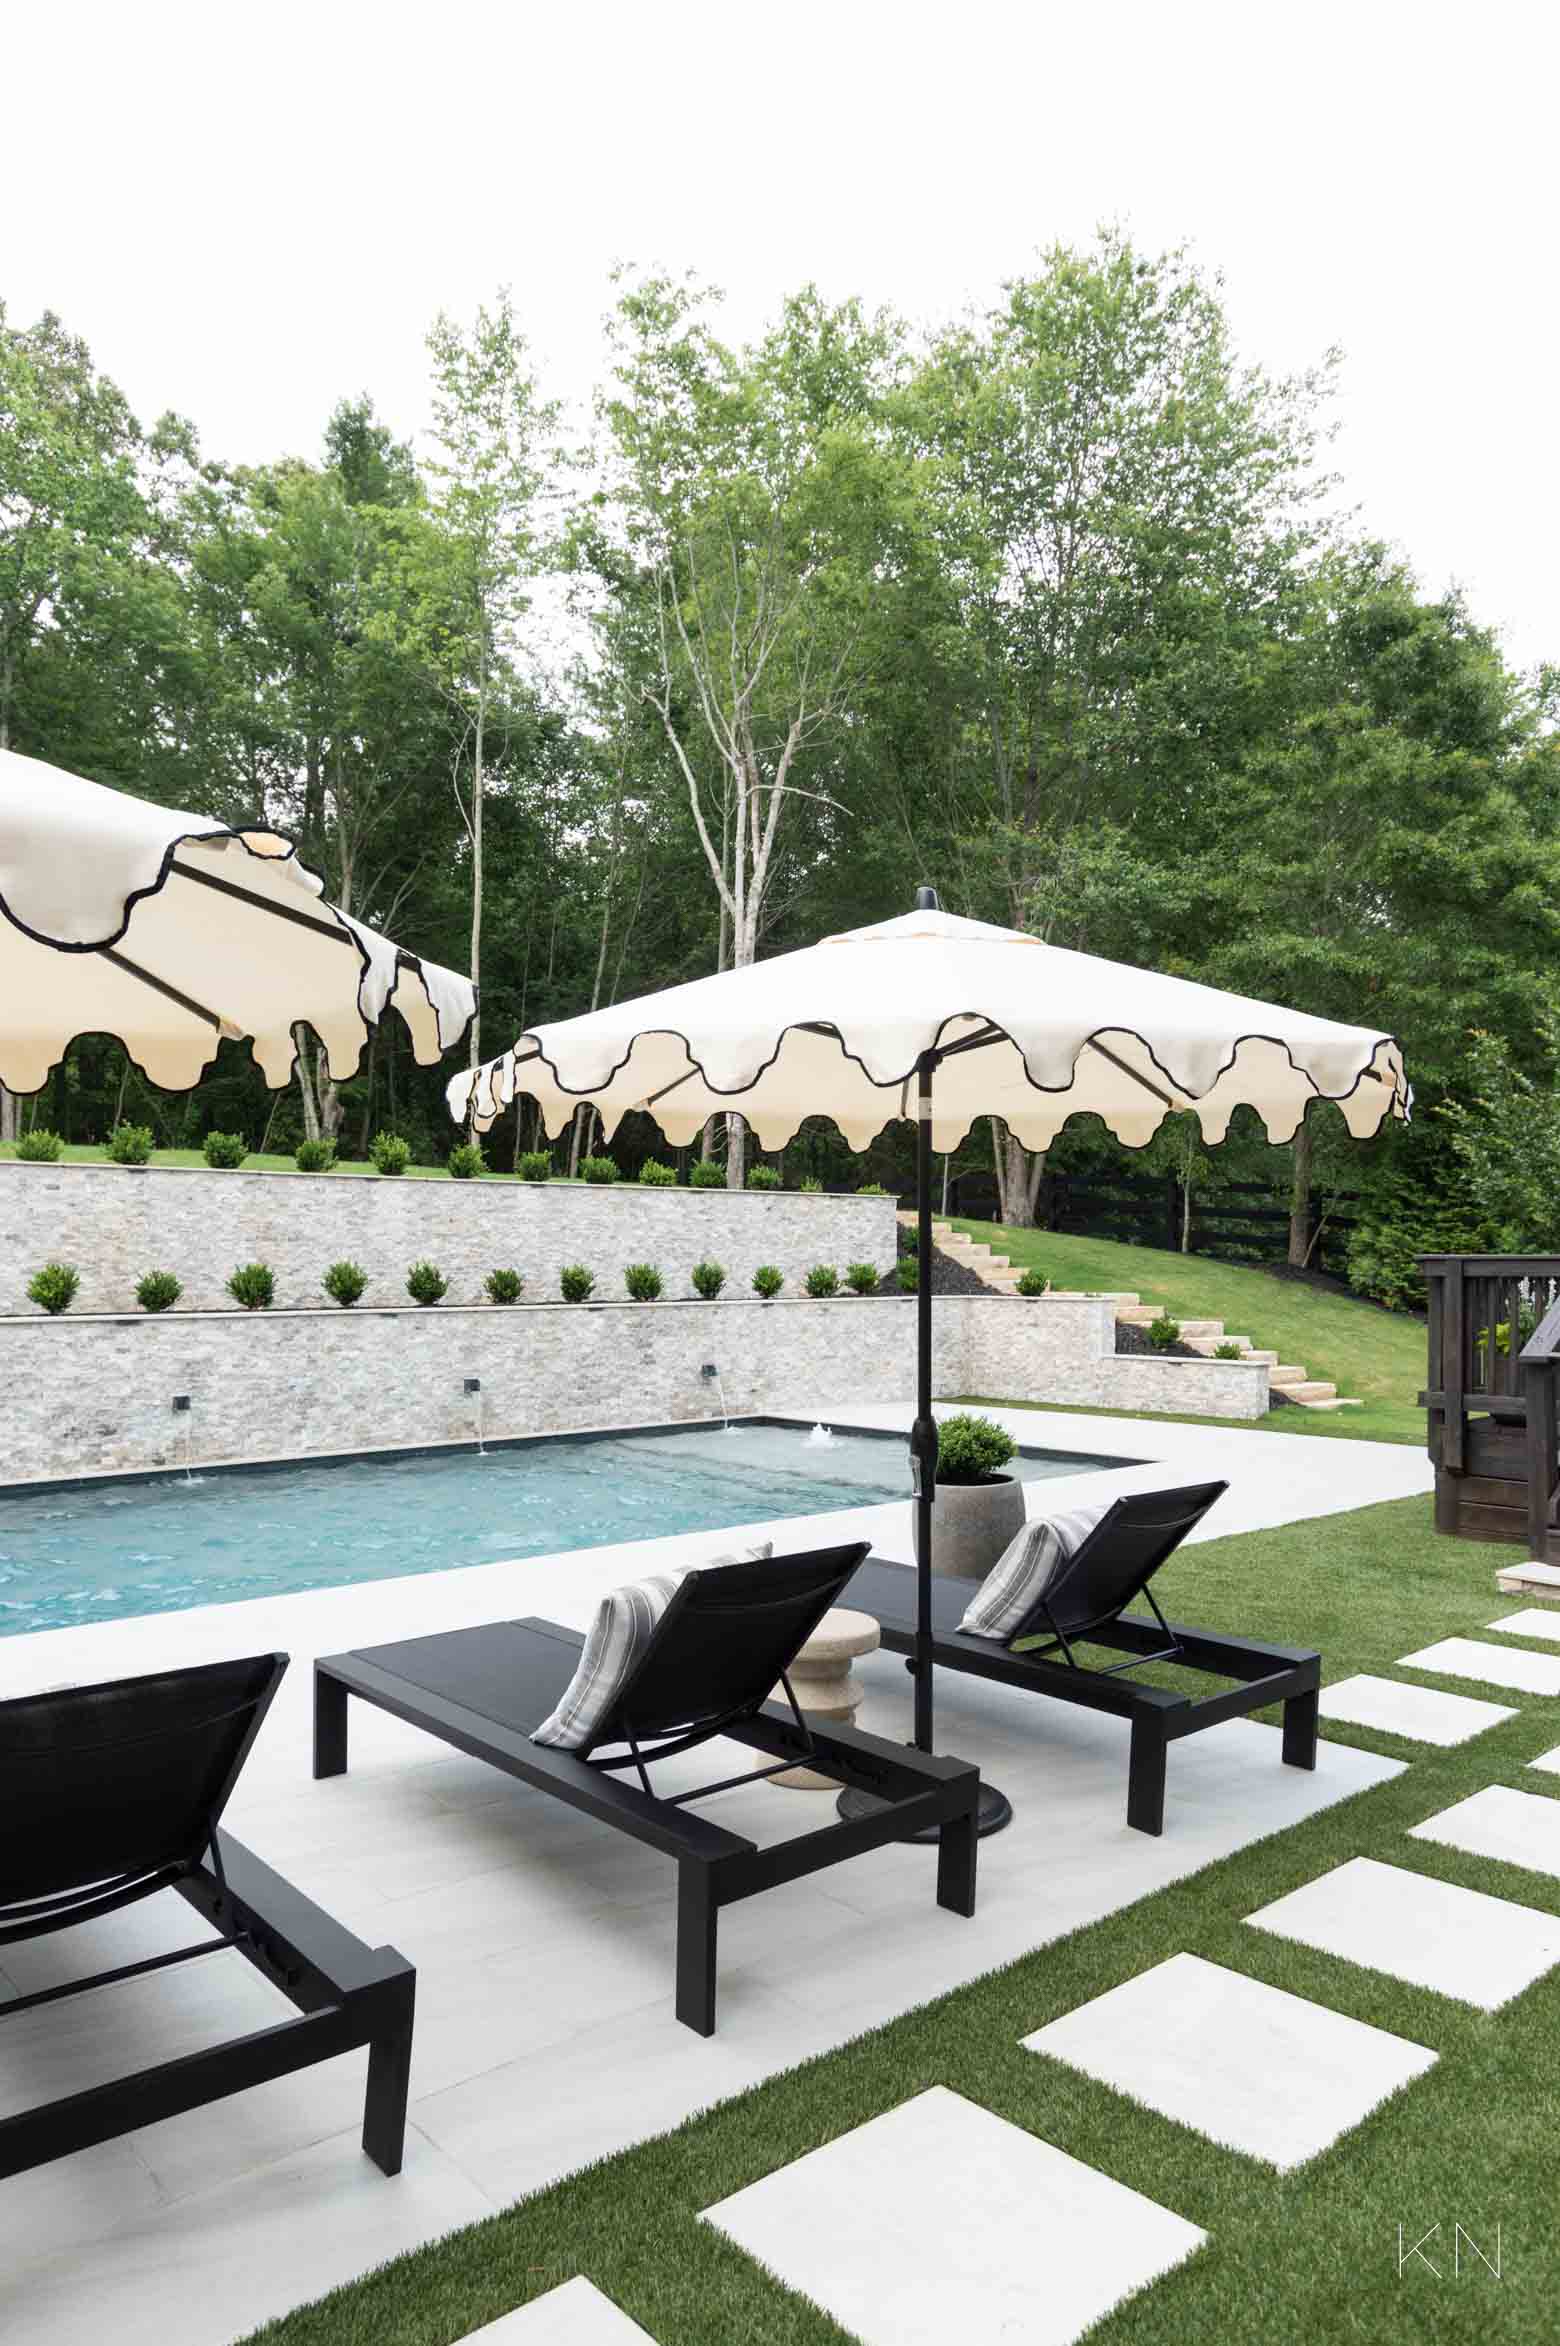 Umbrella Lounge Area Design for the Pool Area